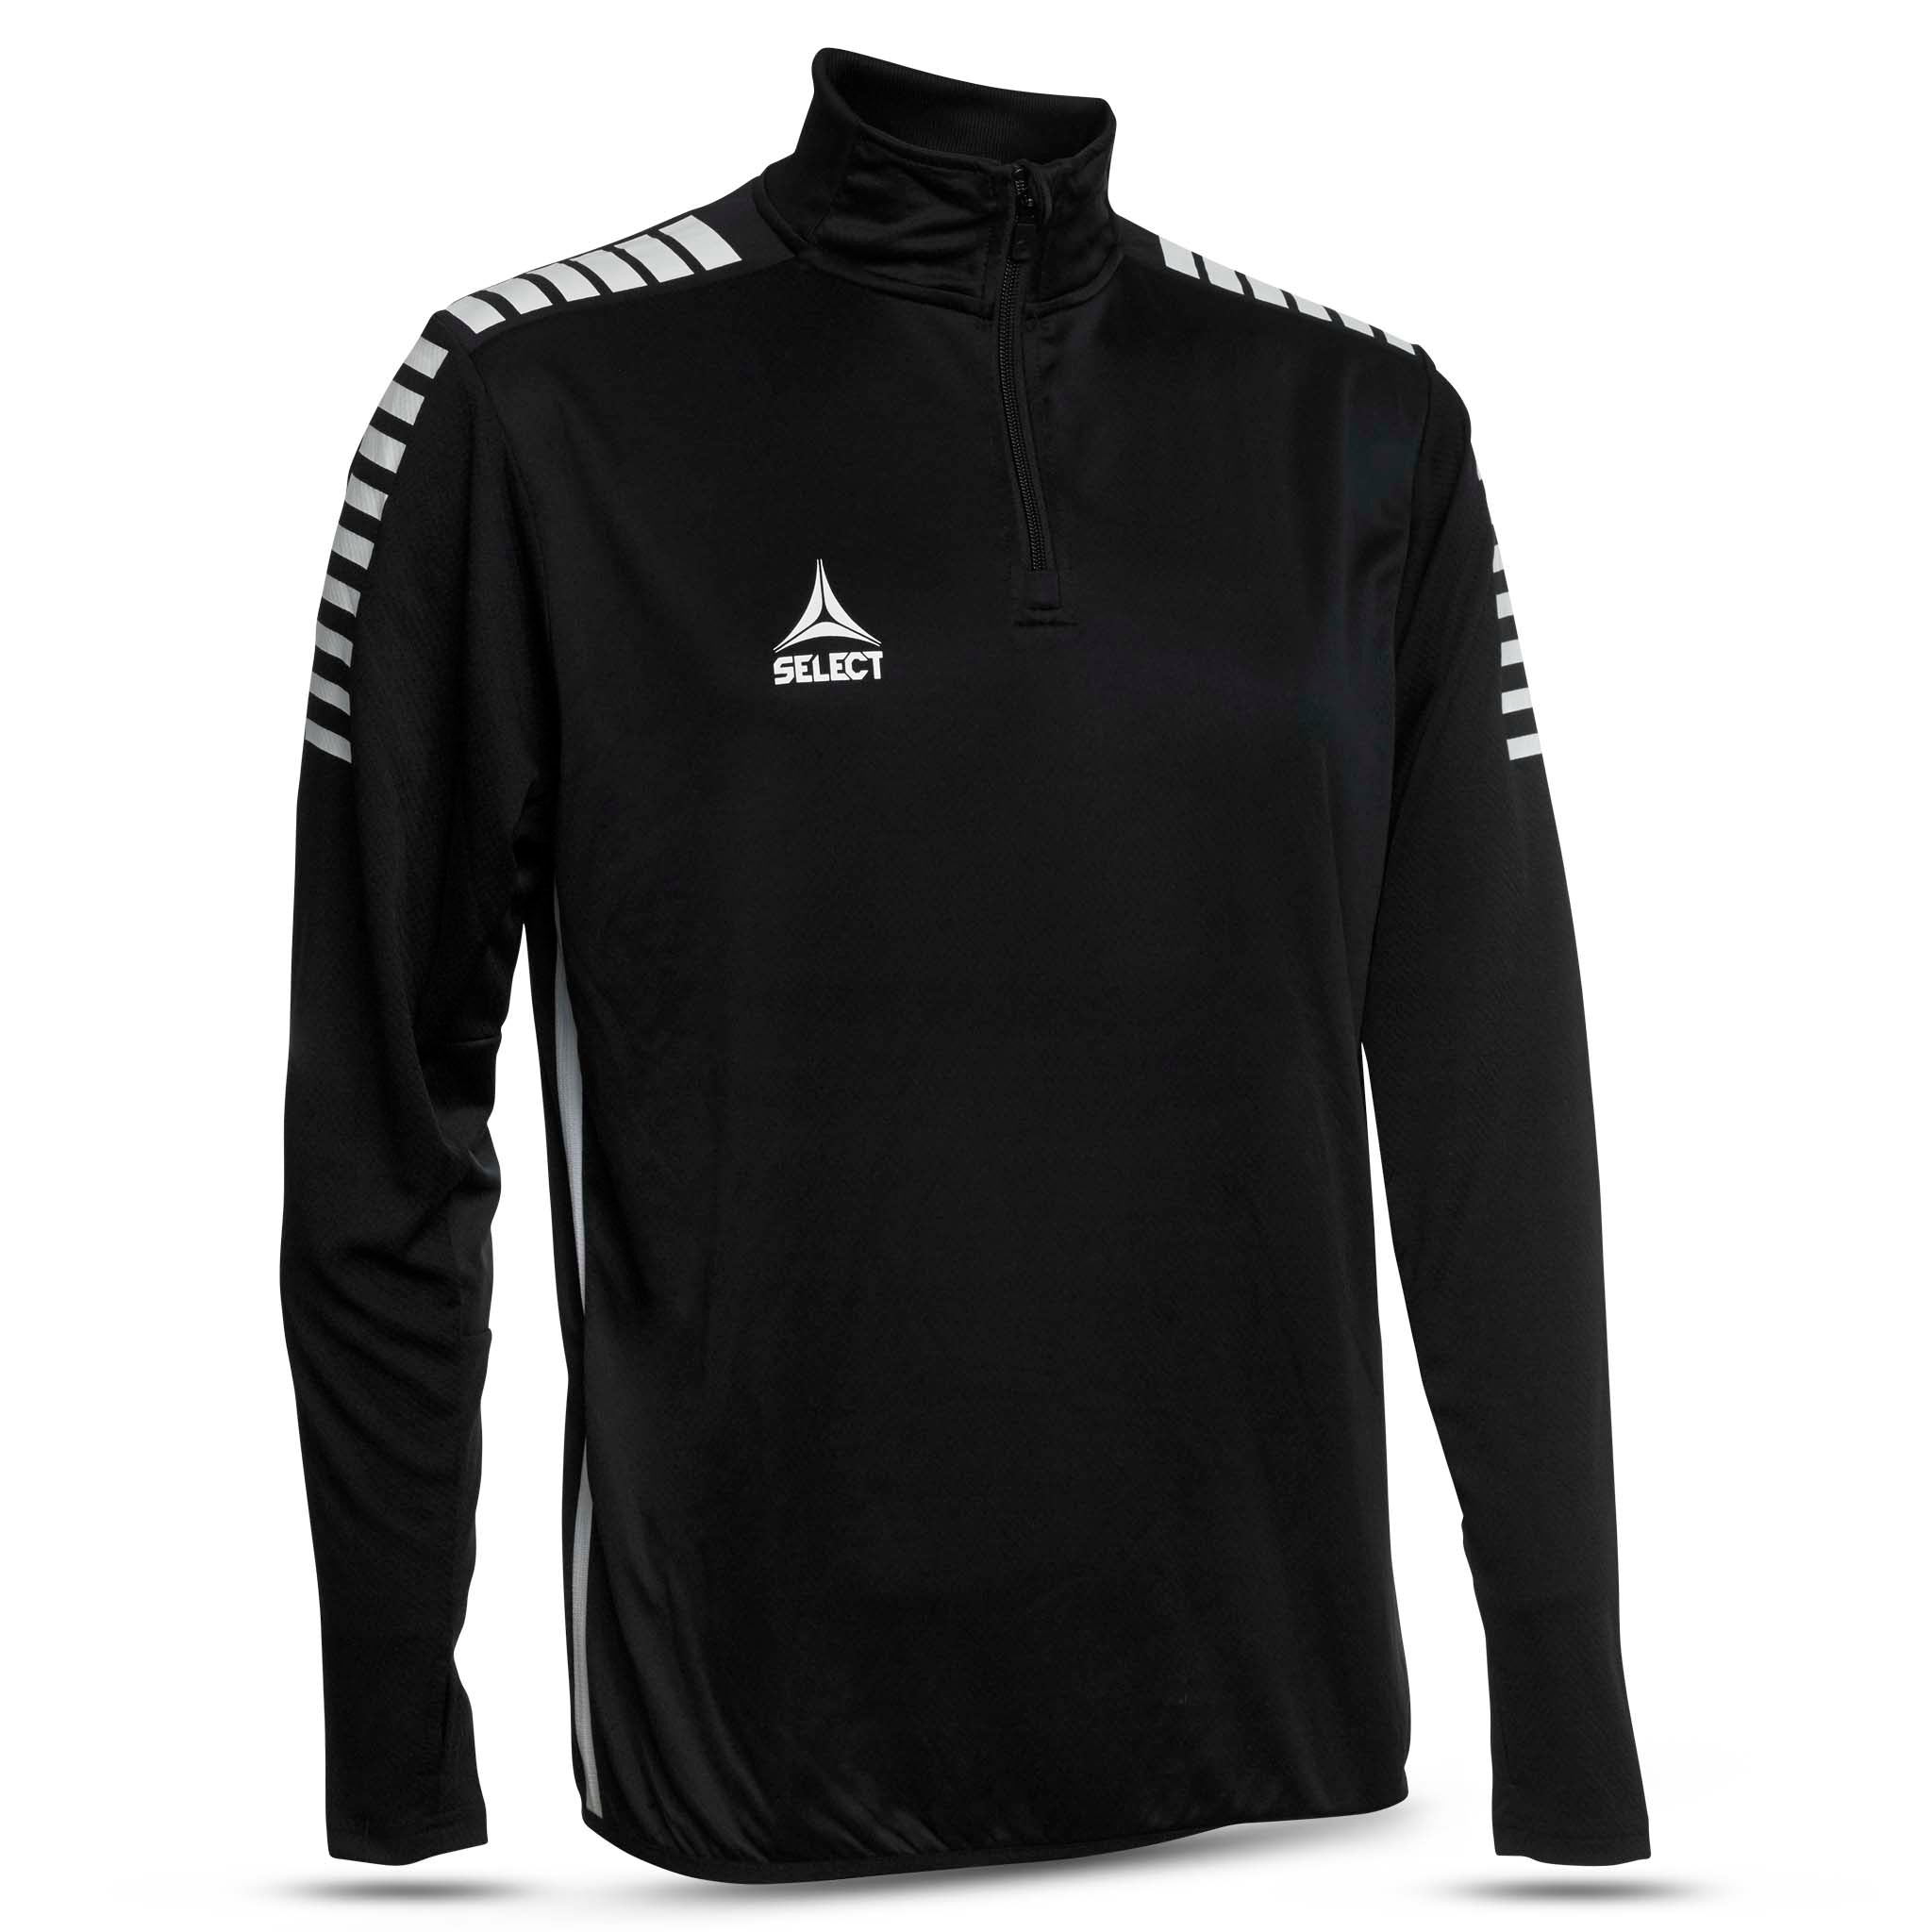 Sweatshirt för träning - Monaco, ungdom #färg_svart